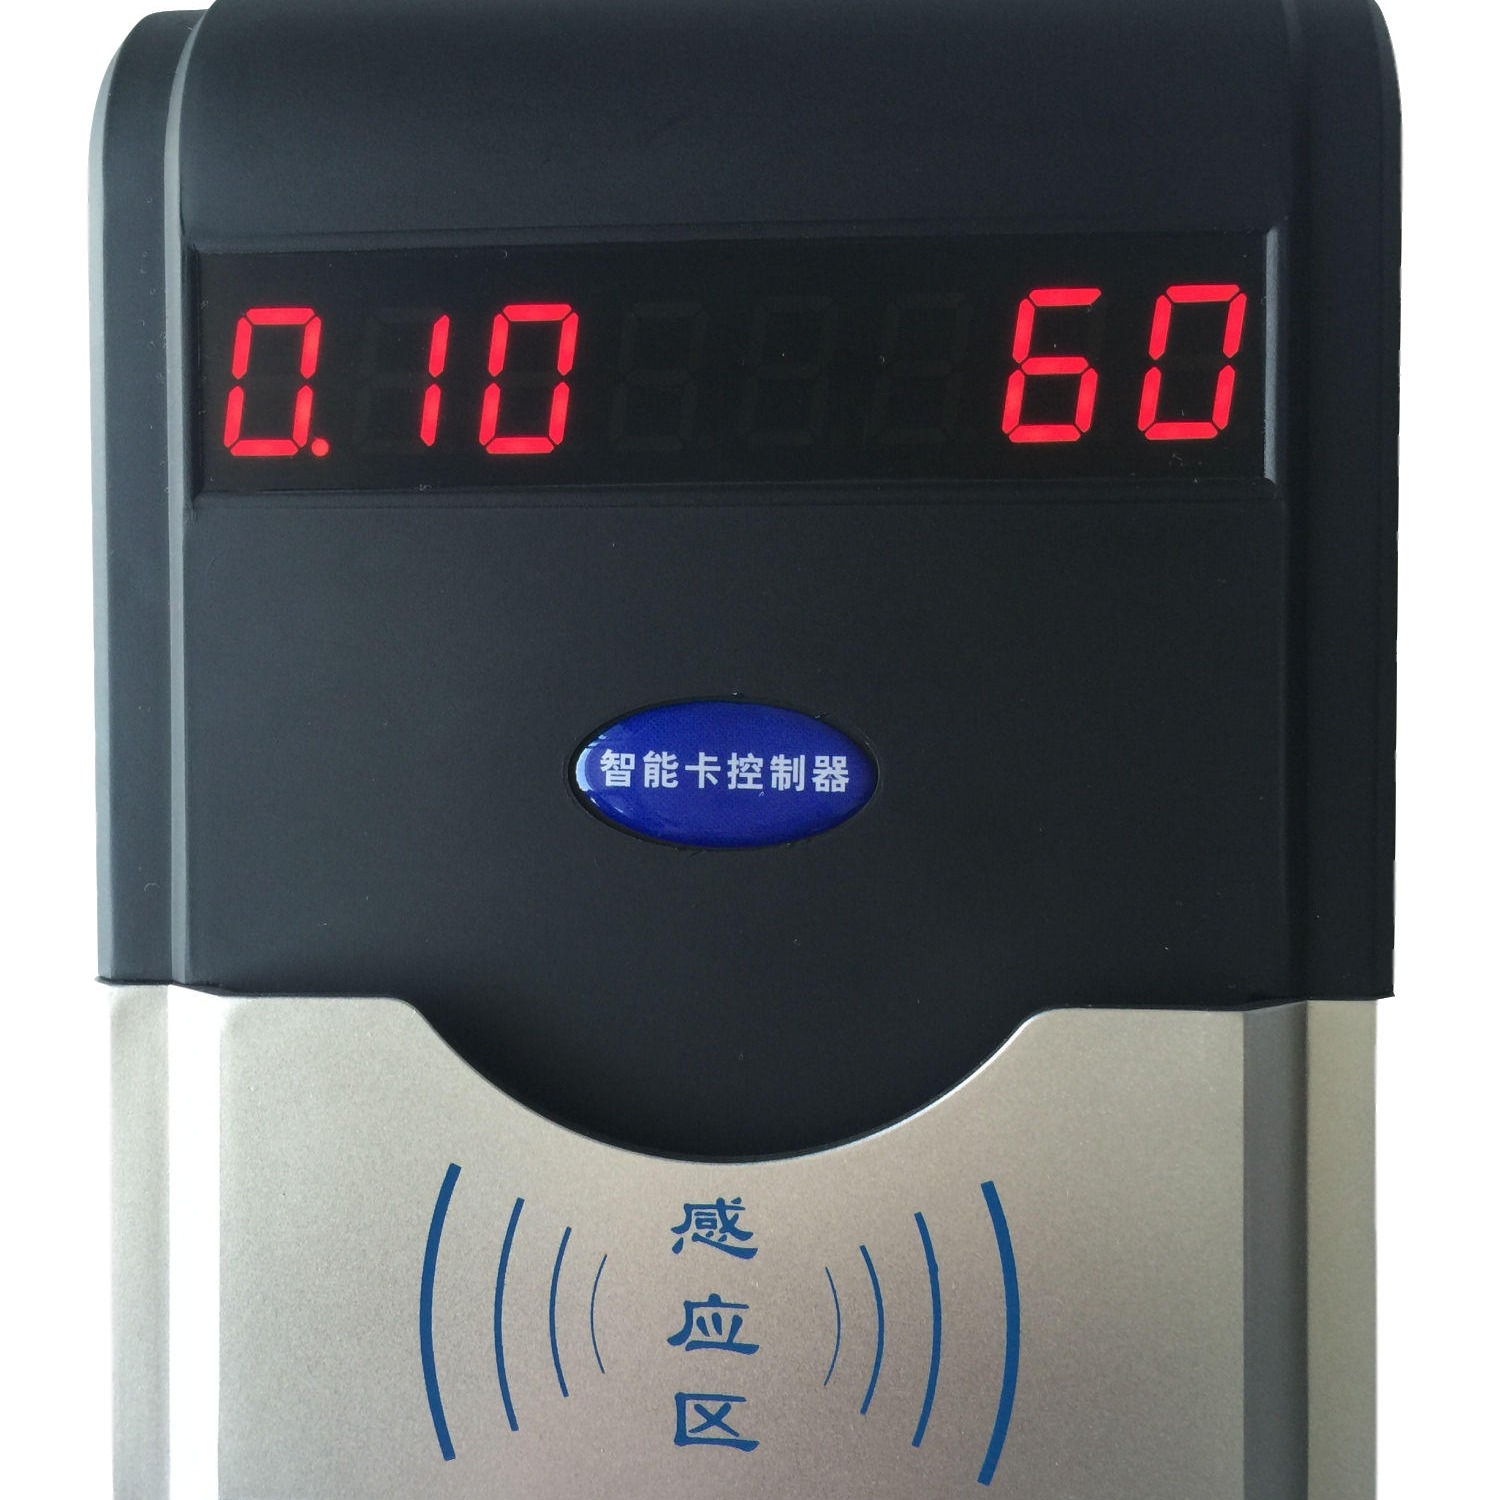 兴天下HF-660刷卡洗澡控水器,洗澡水控机,刷卡洗澡控水器